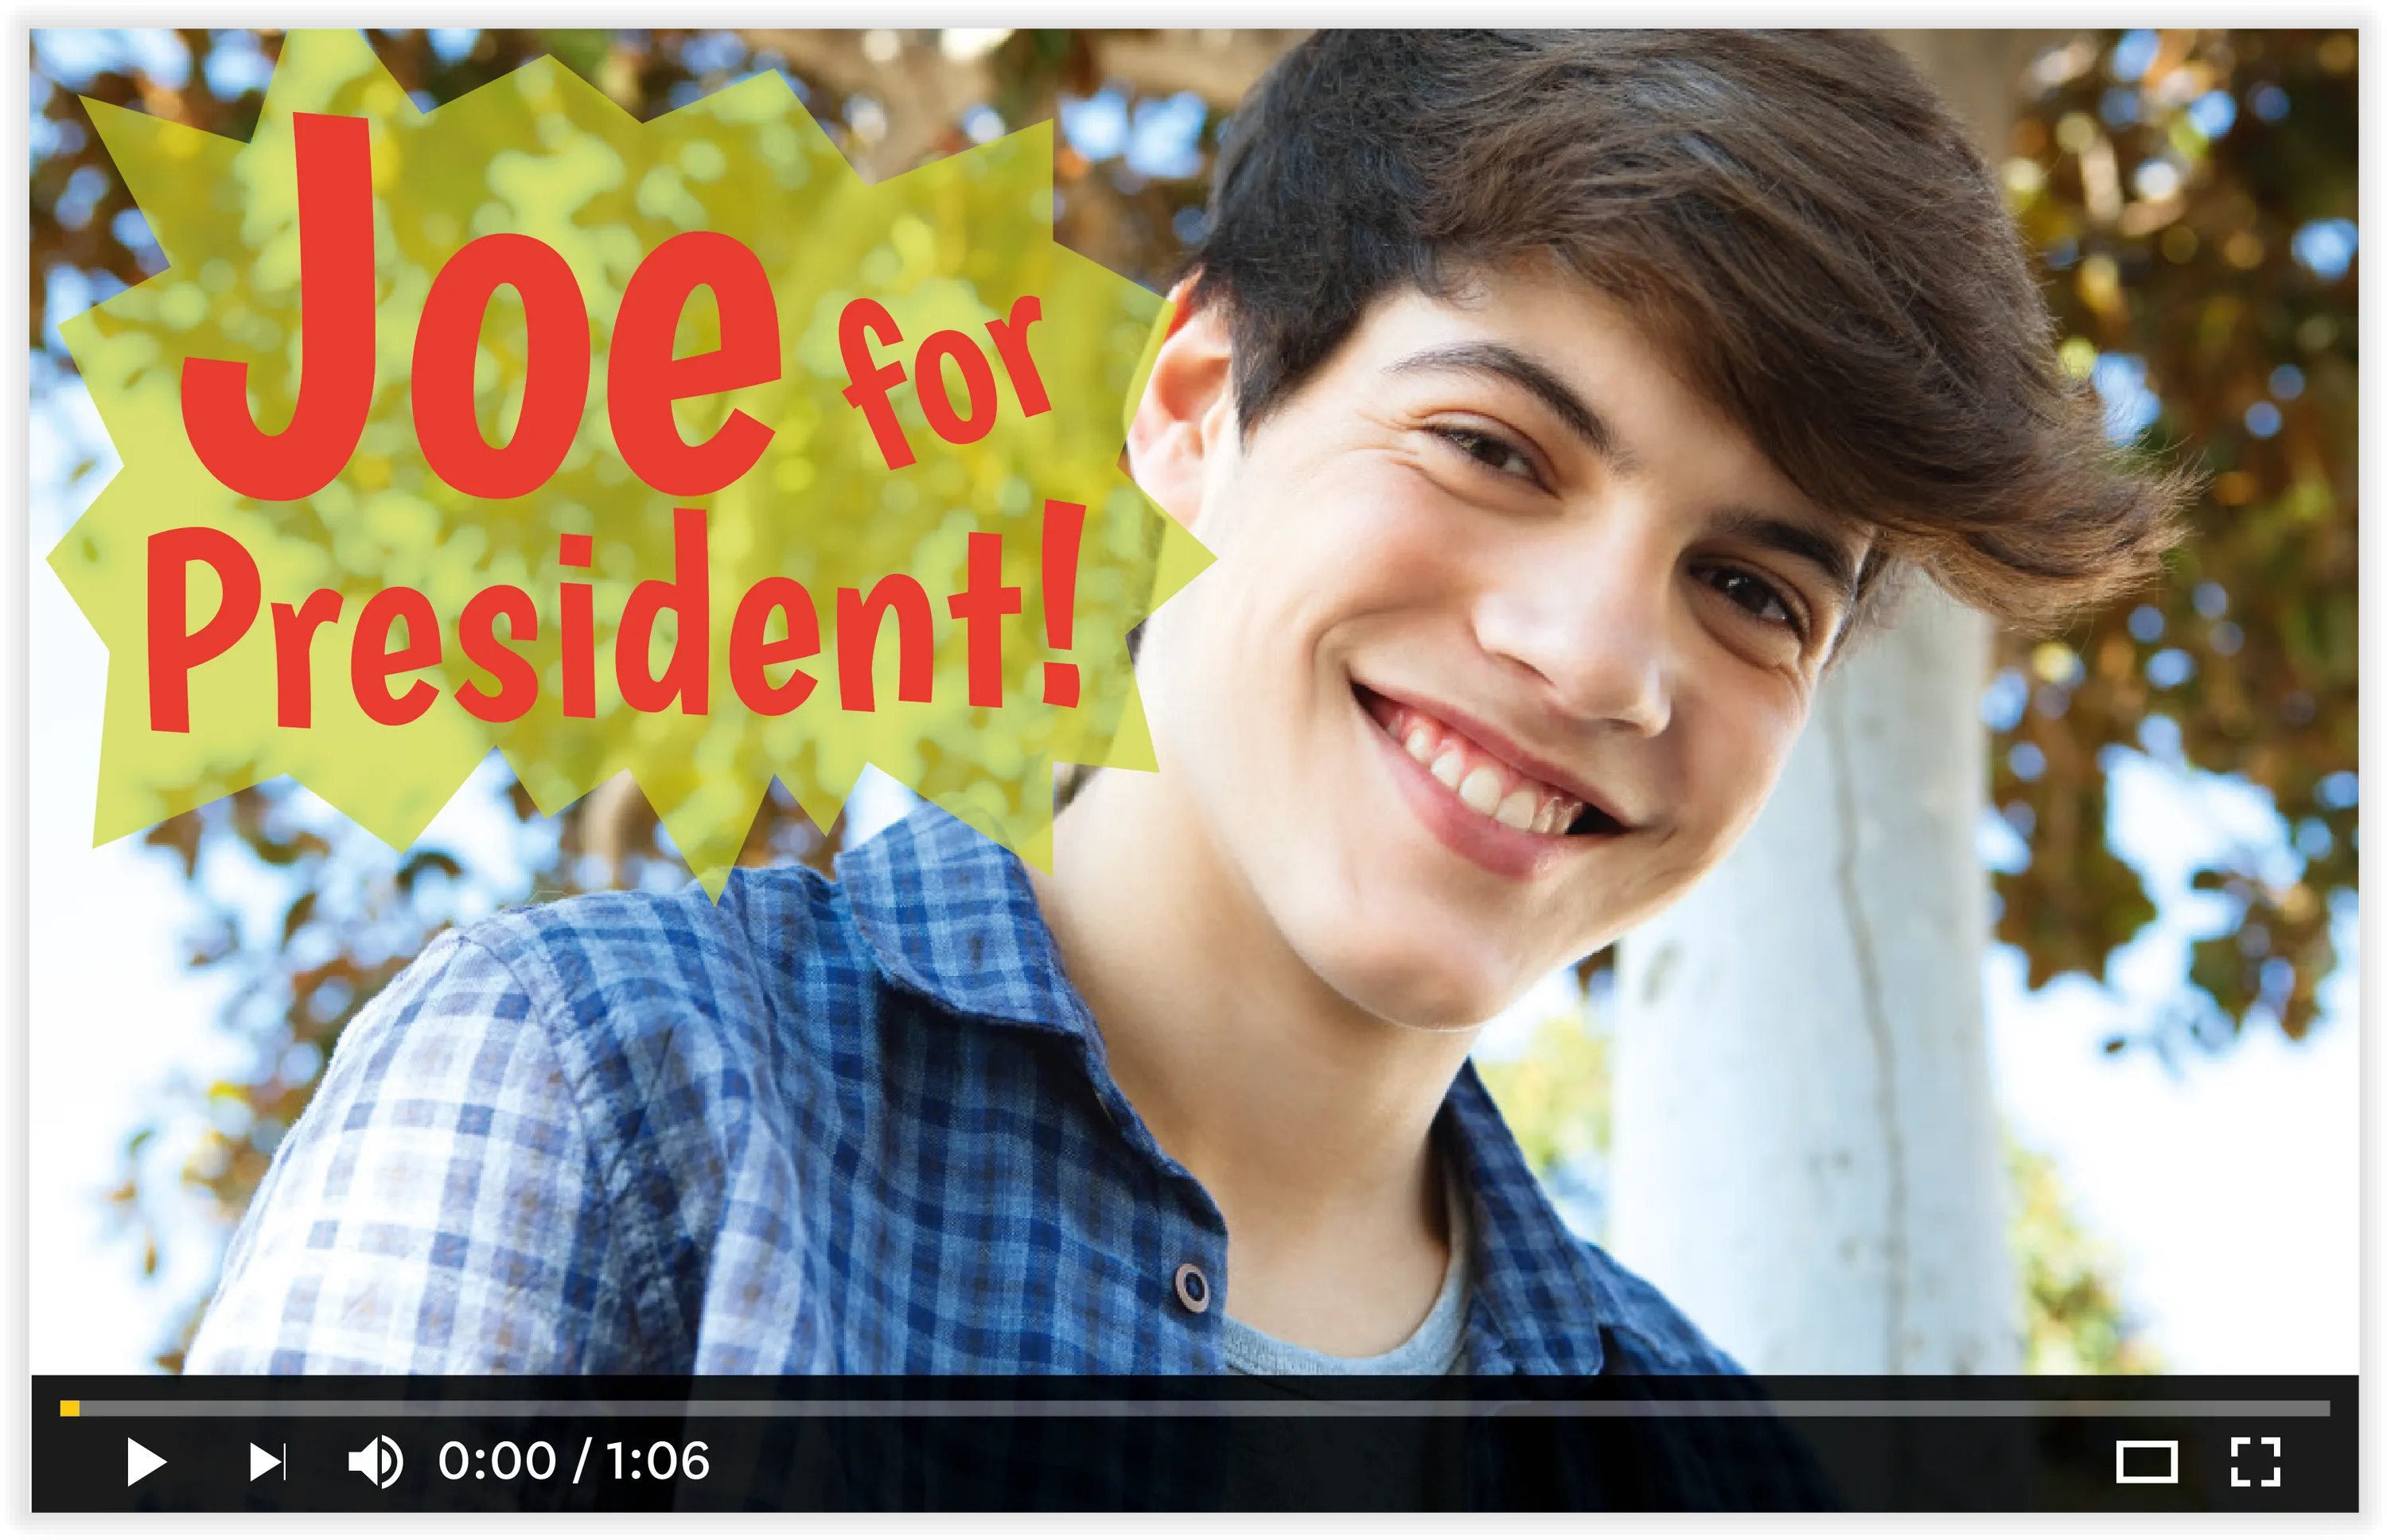 Photo d'une vidéo de la chaine Youtube en question, on voit un jeune homme et il est écrit: Joe for president!